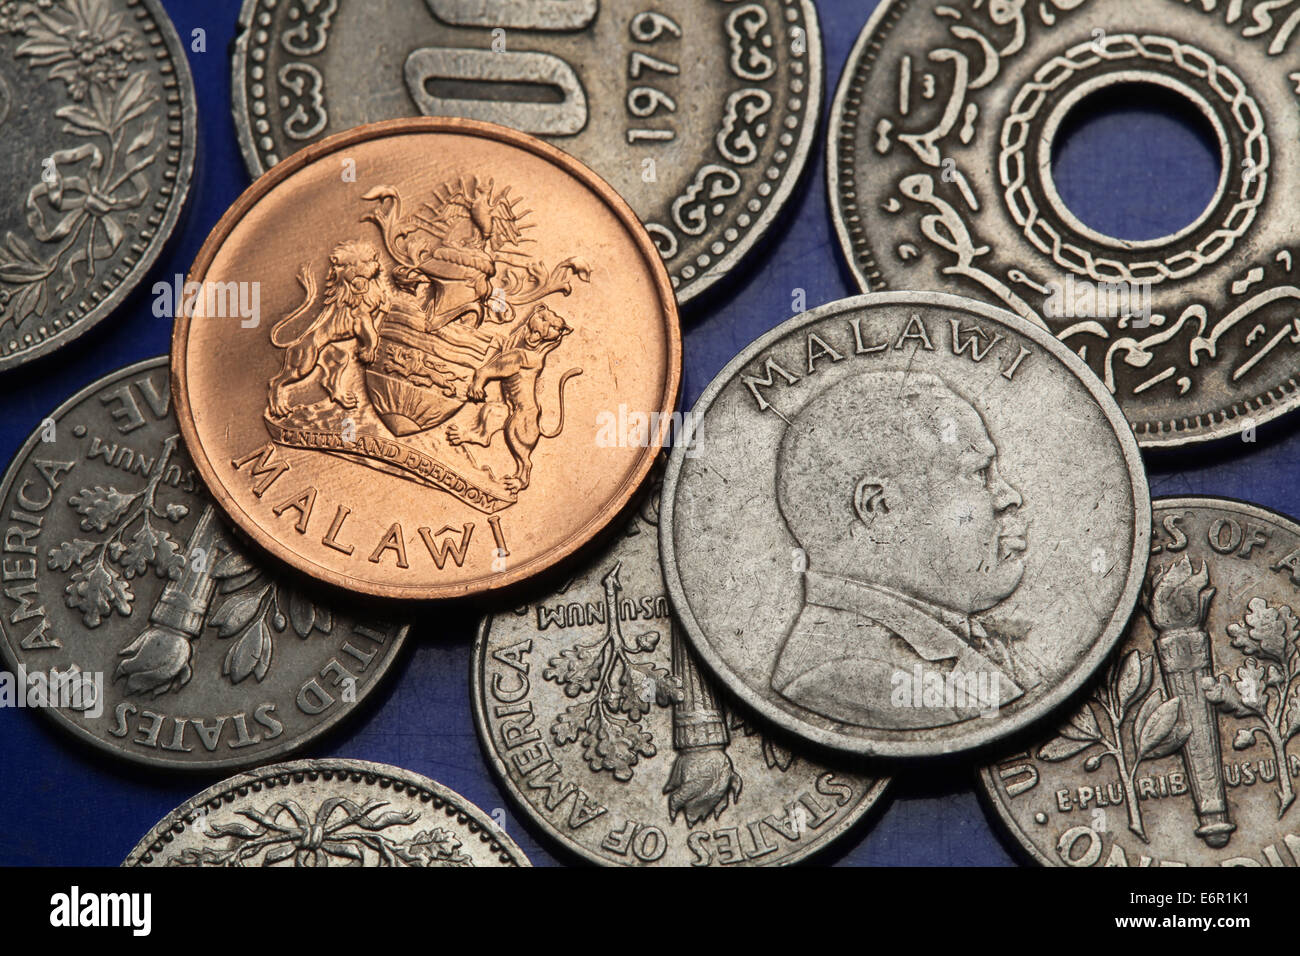 Münzen von Malawi. Malawische Wappen und malawischer Nationalheld John Chilembwes dargestellt in Malawi Tambala Münzen. Stockfoto